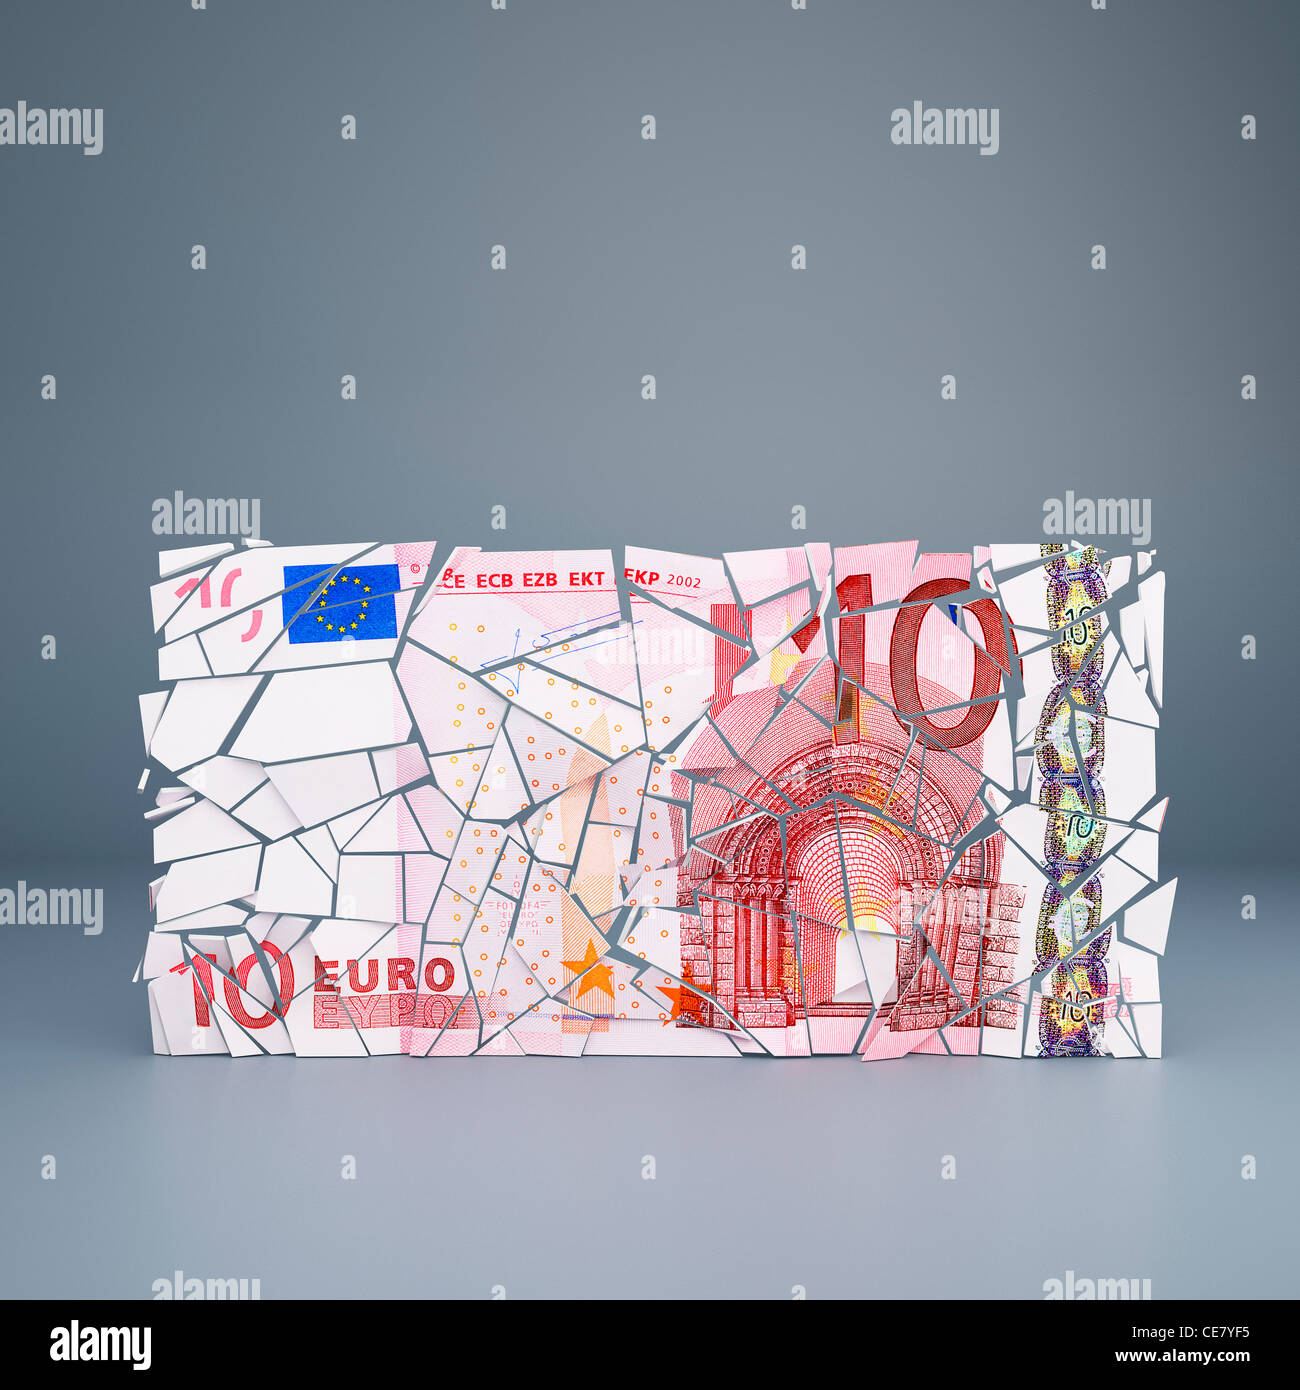 Dieci euro nota sbriciolamento - che rappresentano la rottura dell'Unione europea moneta unica / default dei paesi dell area dell euro Foto Stock